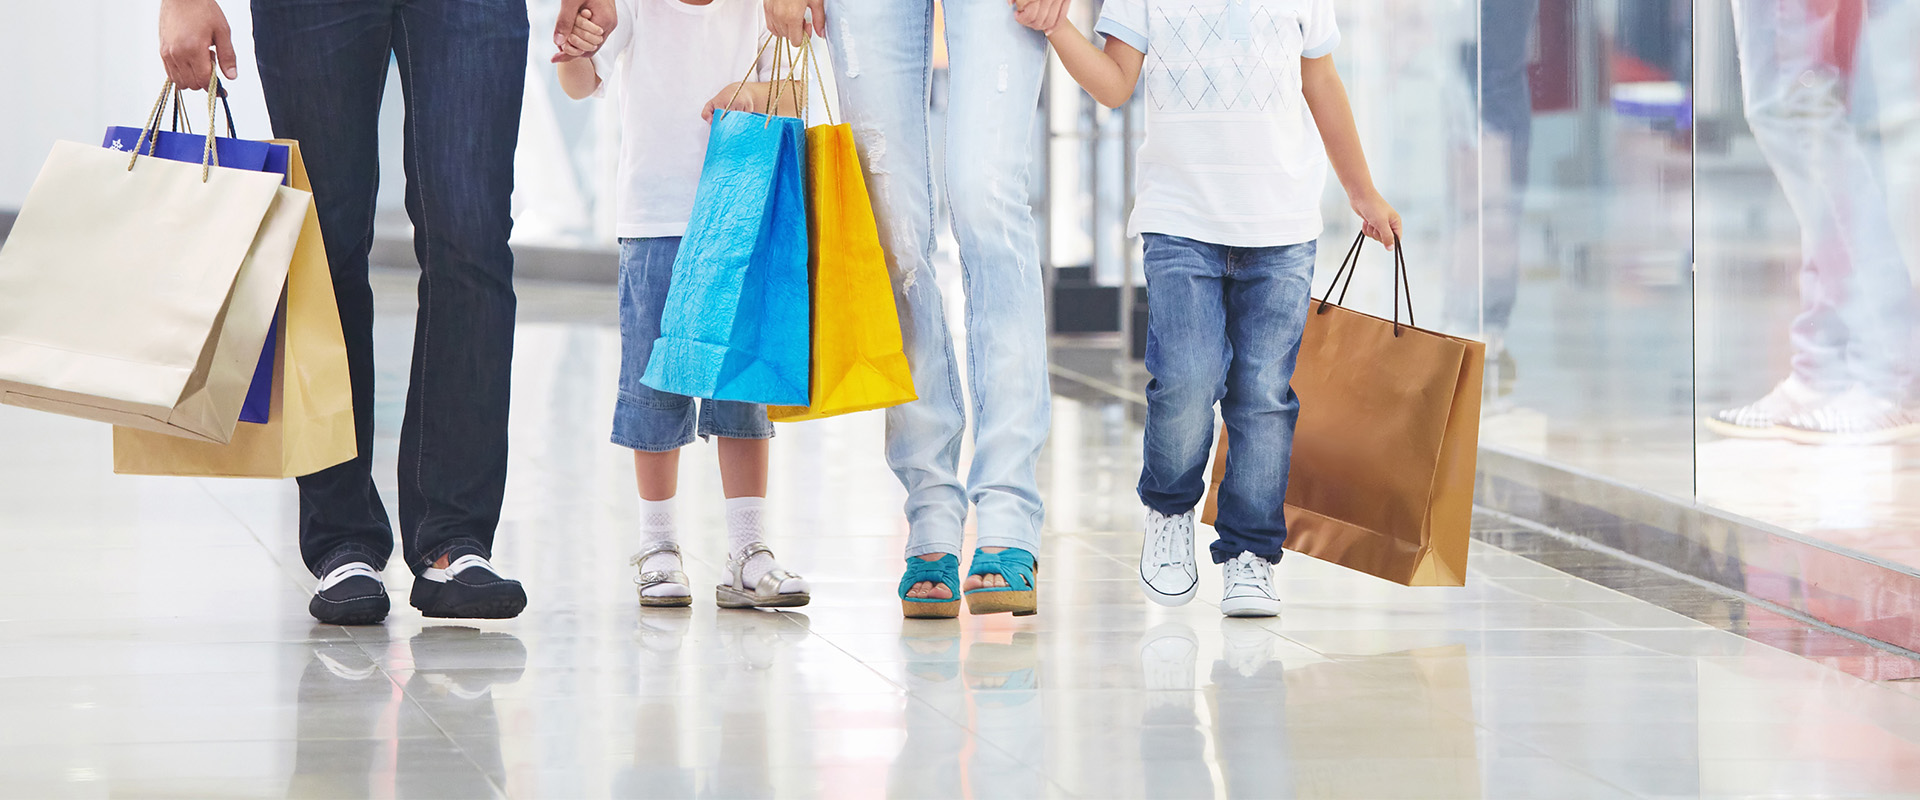 Familien erwarten beim Einkaufen ein angenehmes Kundenerlebnis